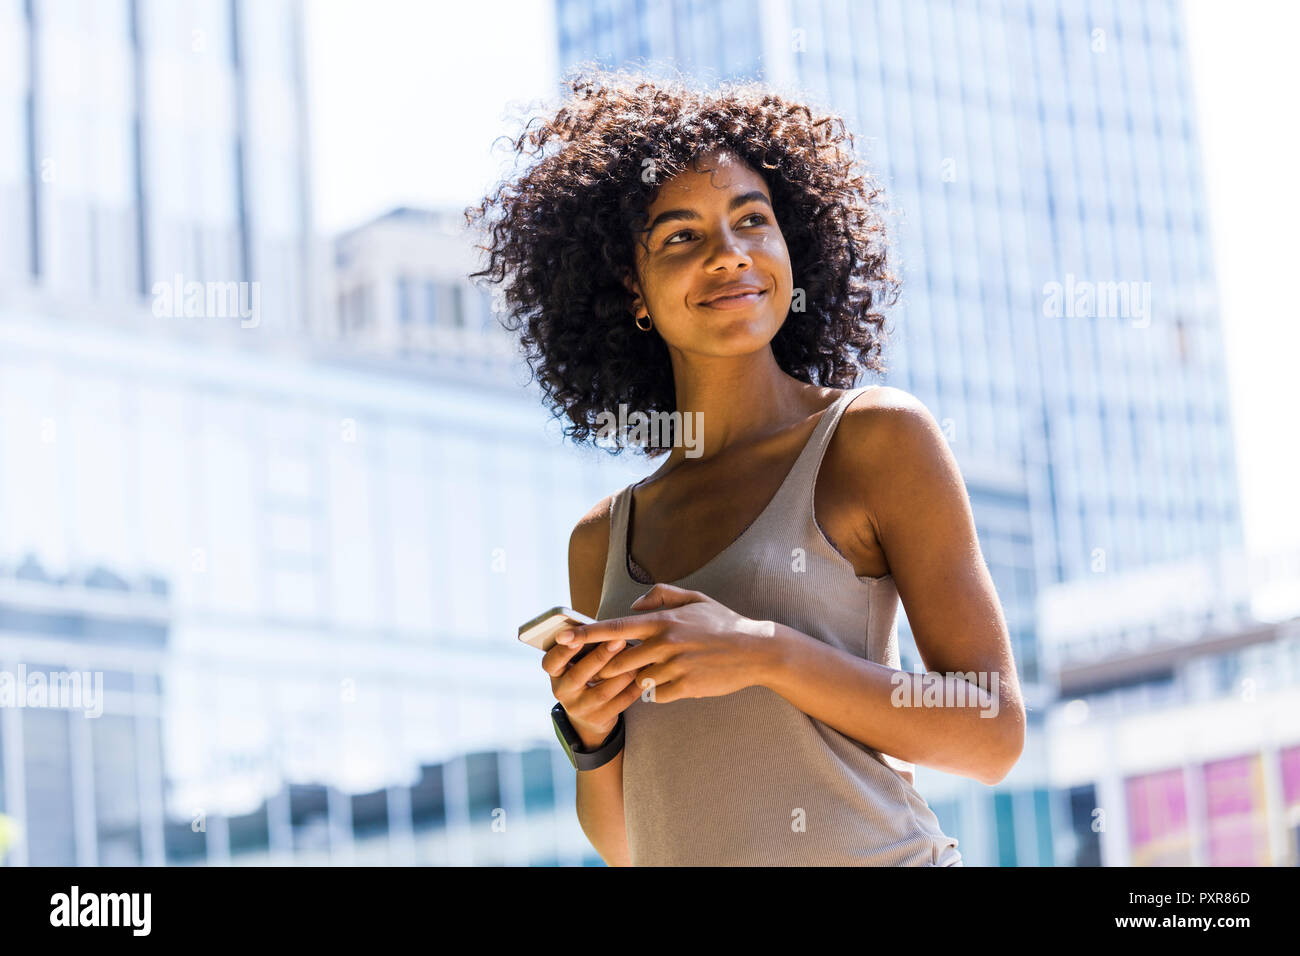 Deutschland, Frankfurt, Portrait von lächelnden jungen Frau mit lockigem Haar vor der Wolkenkratzer Stockfoto